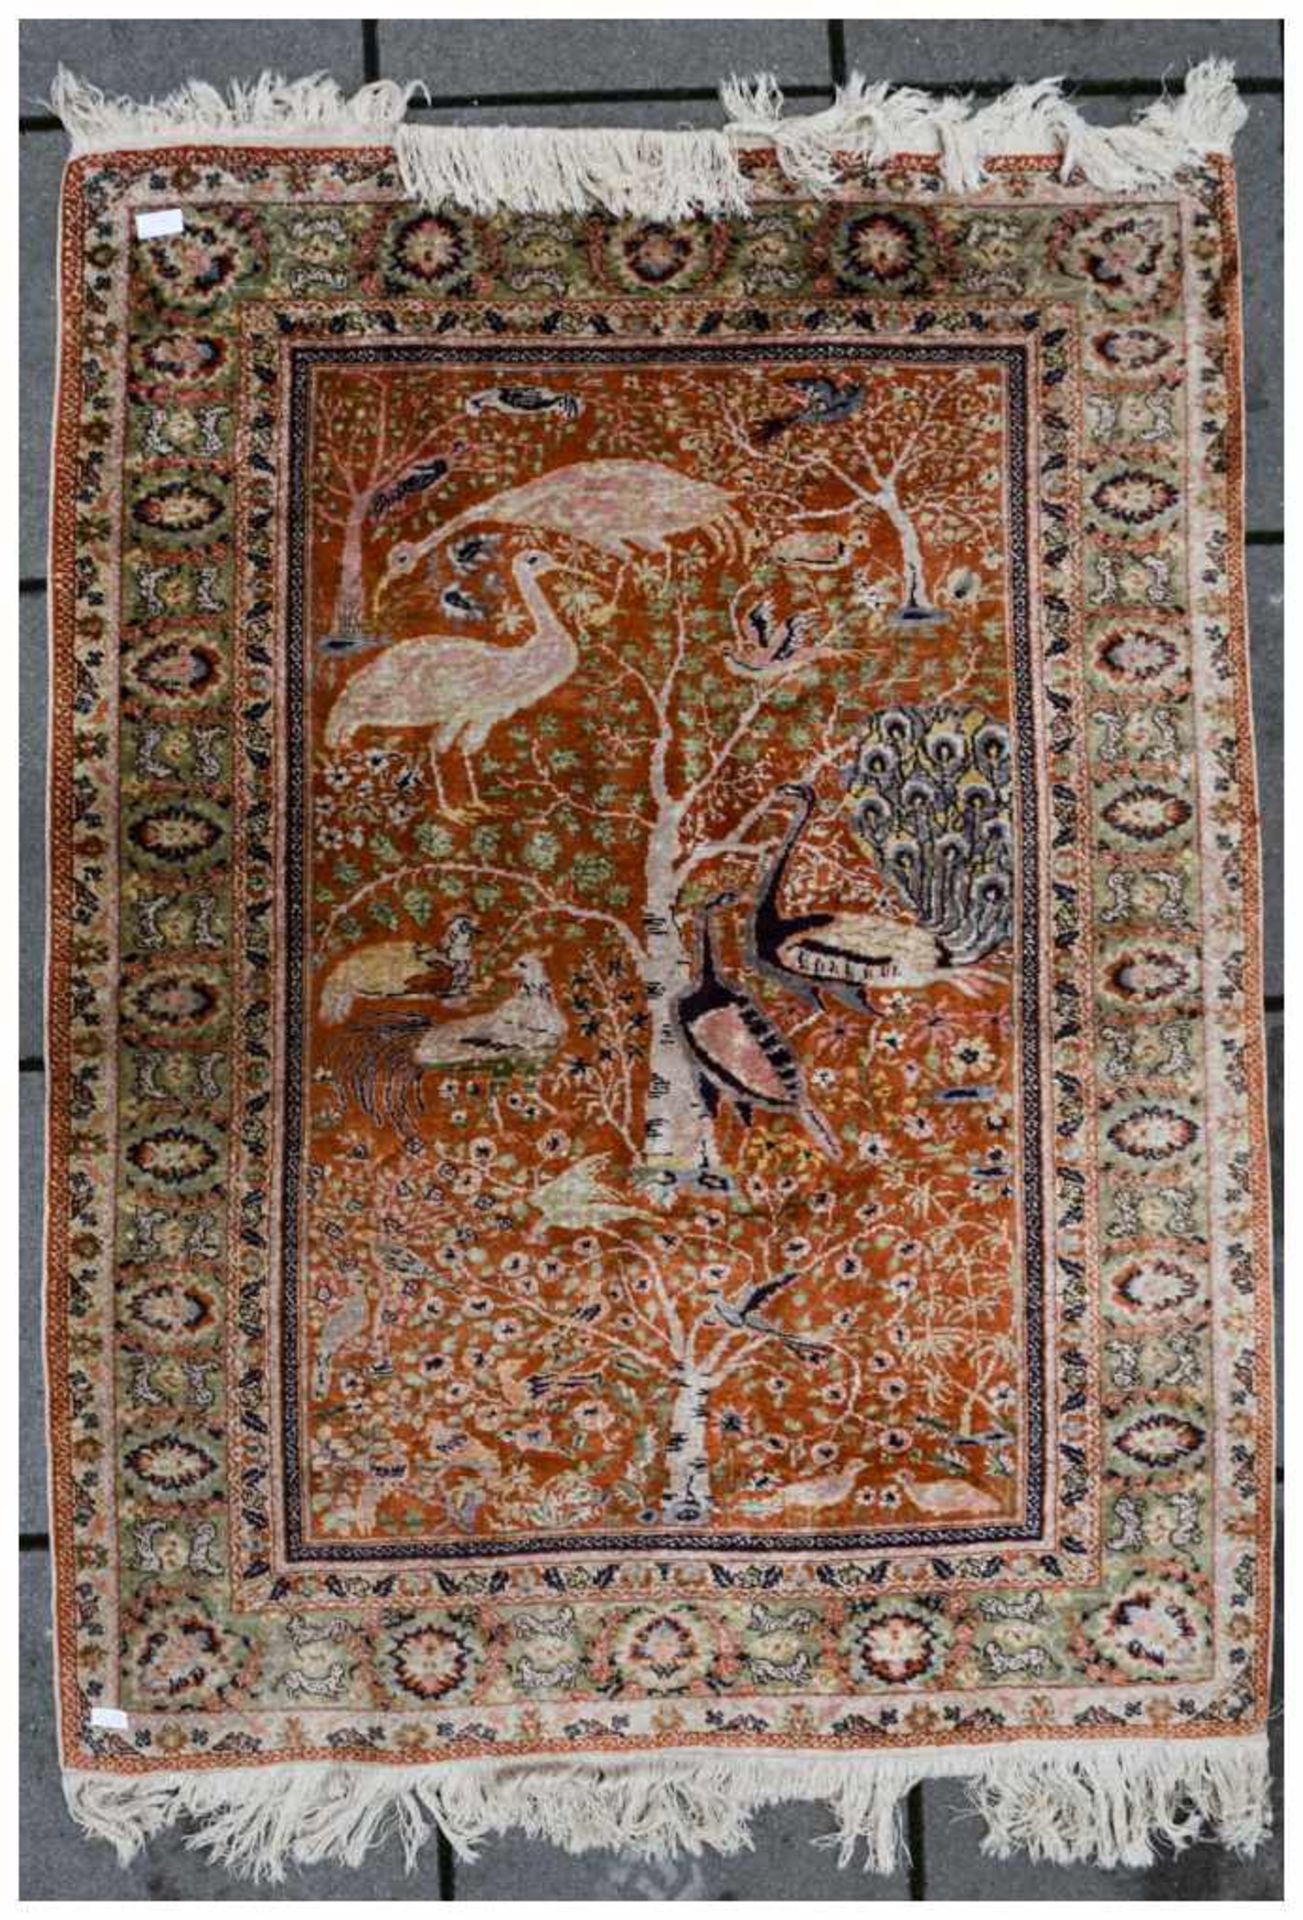 SEIDENTEPPICH 1, polychrom, Persien 20. Jahrhundert Hellrot/orange, Vögel, Kraniche, Pfauen mit